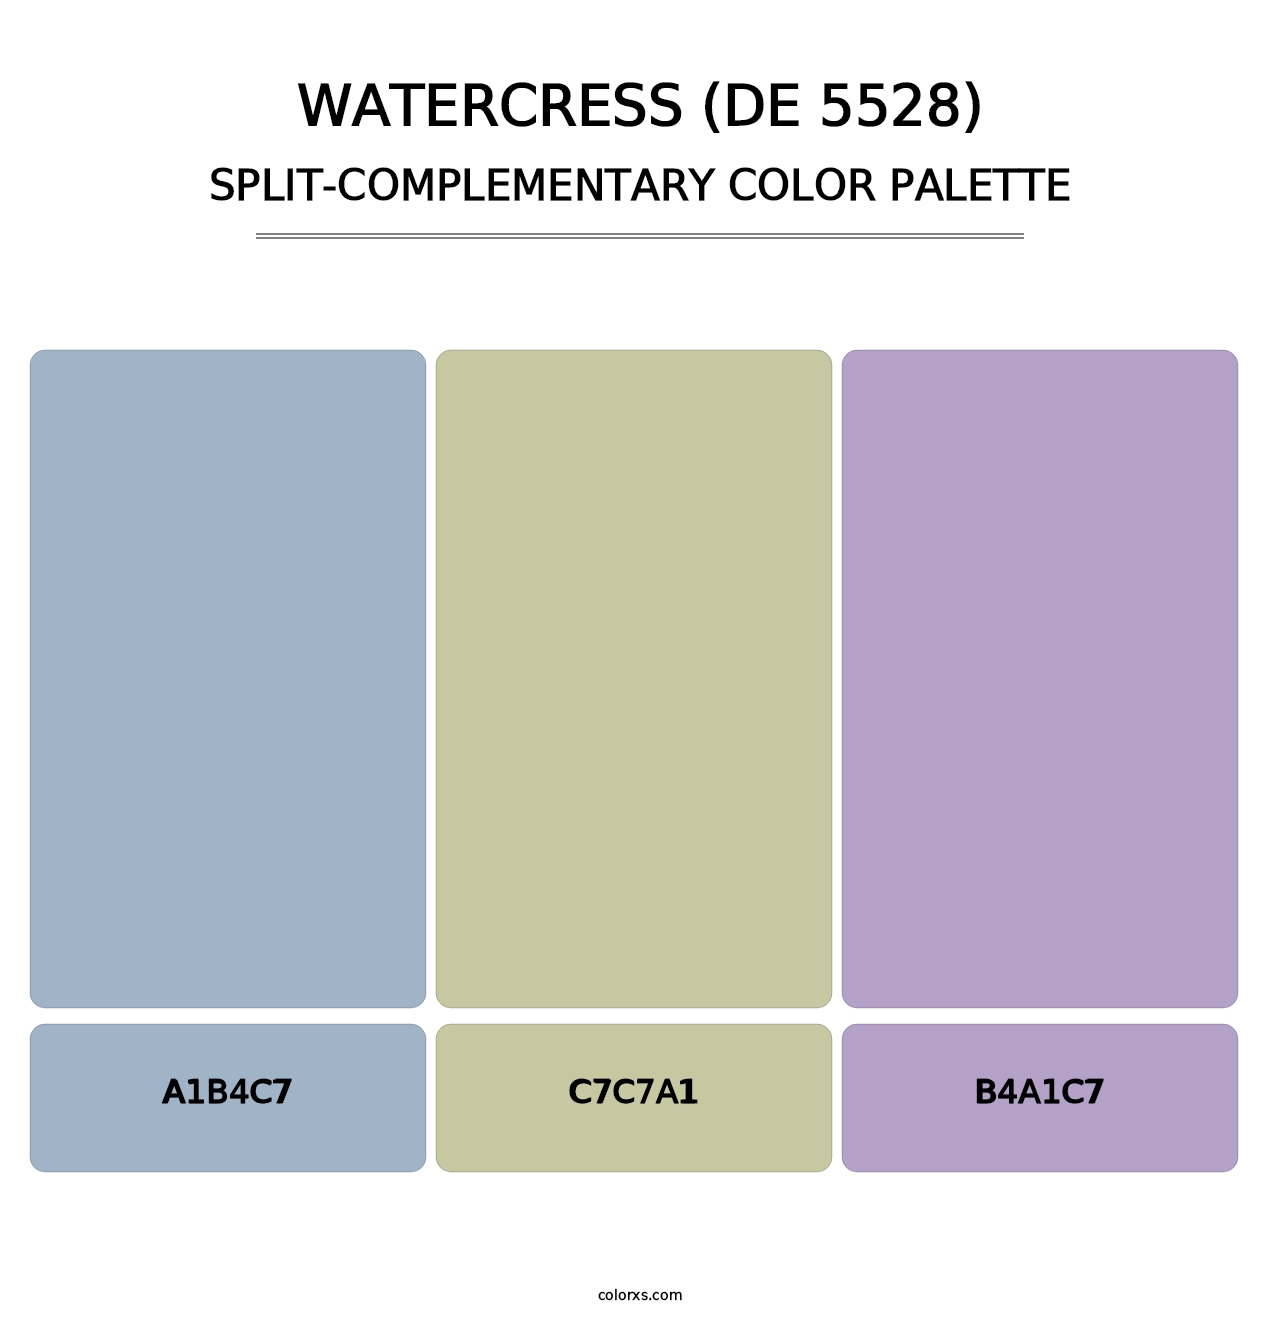 Watercress (DE 5528) - Split-Complementary Color Palette